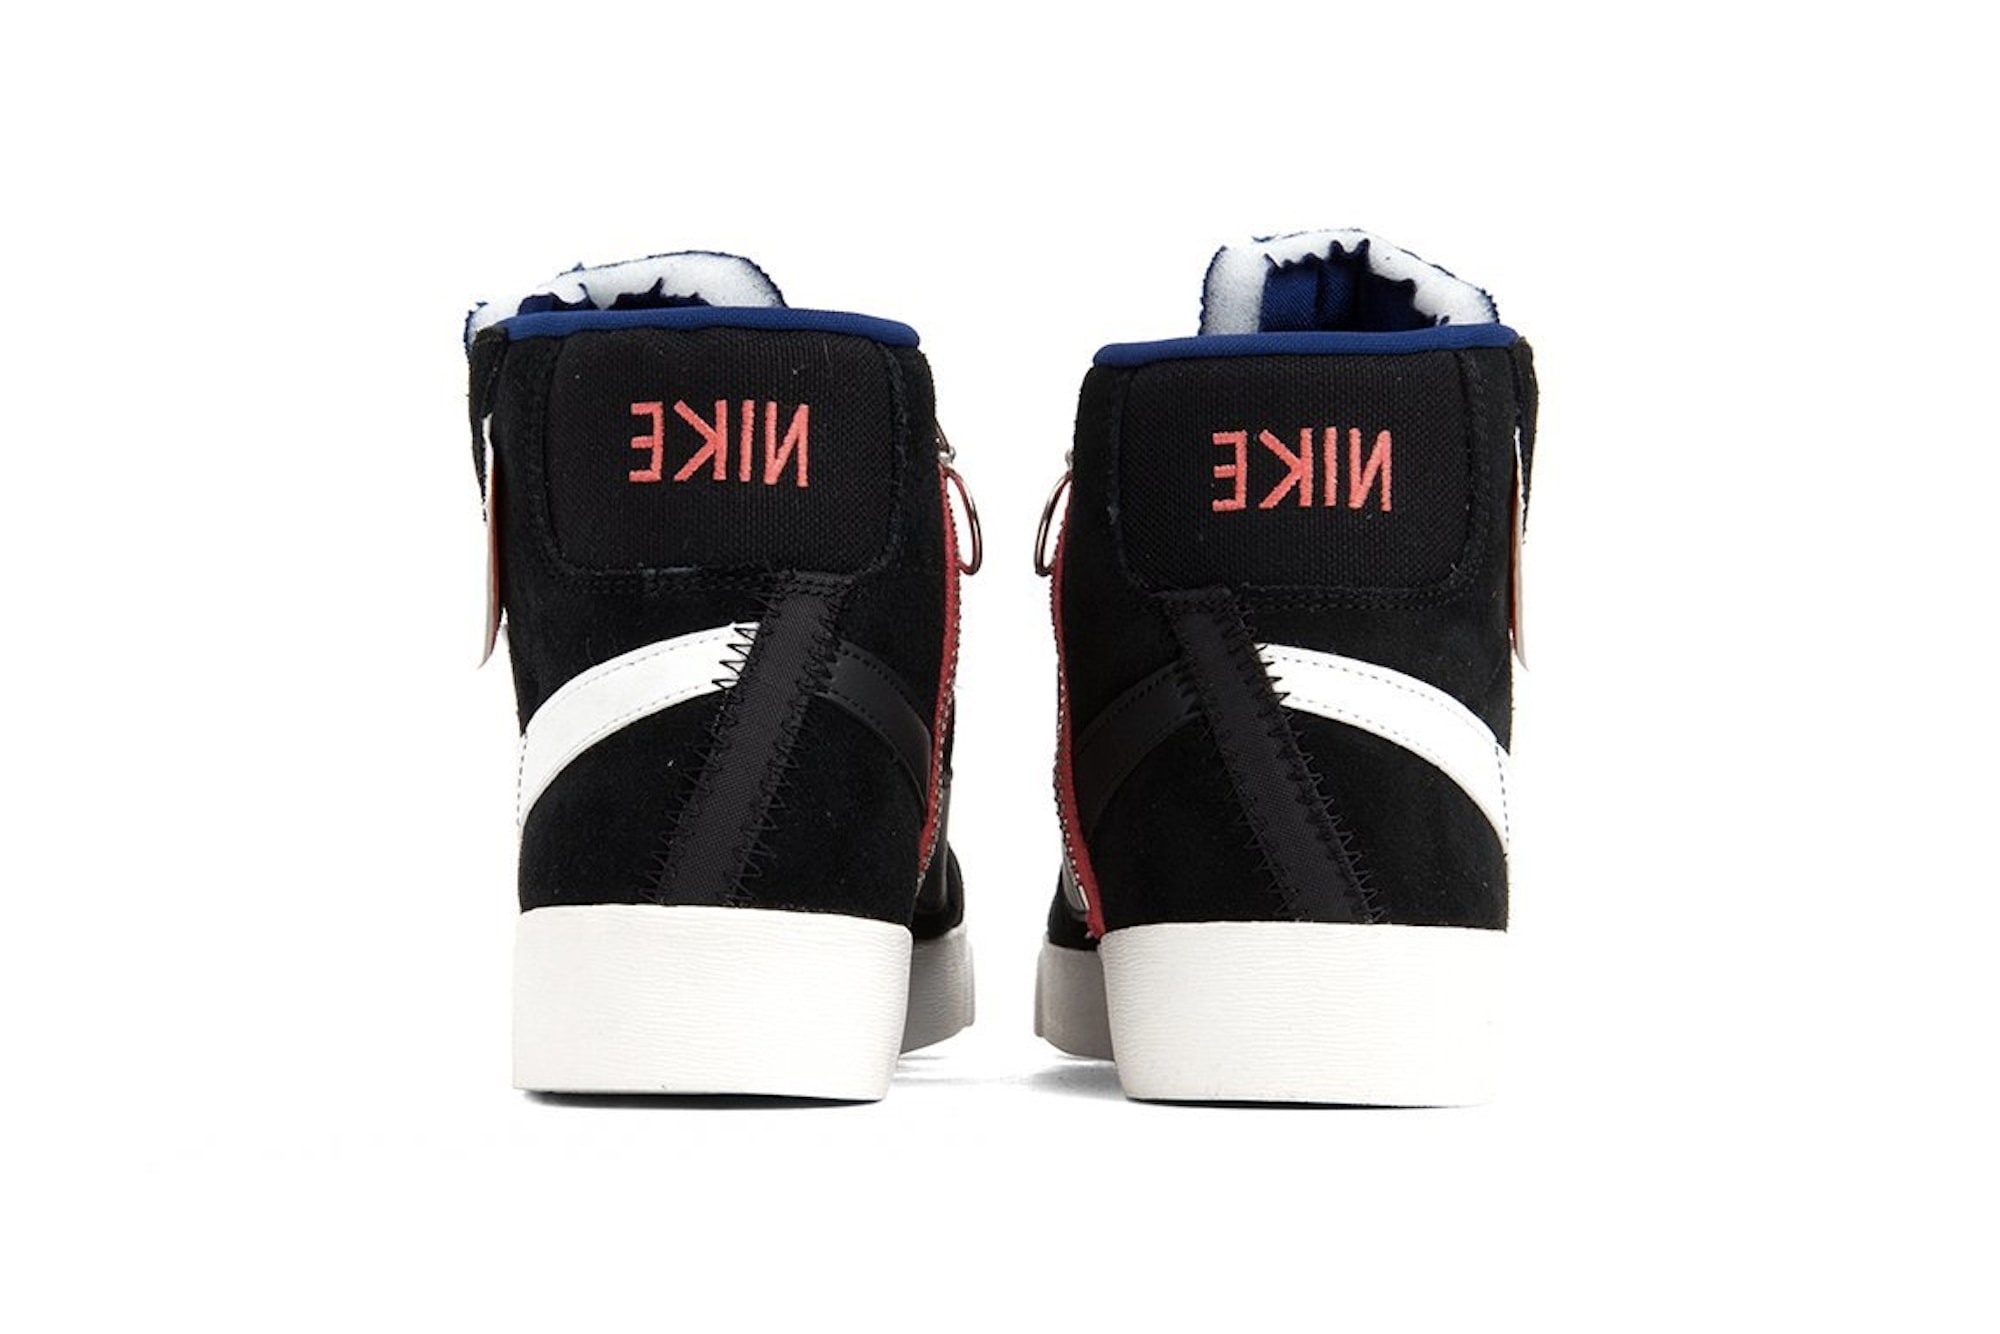 Nike Blazer Mid Rebel "Summit White"/"Black" Sneaker Shoe Release Footwear Trainer 